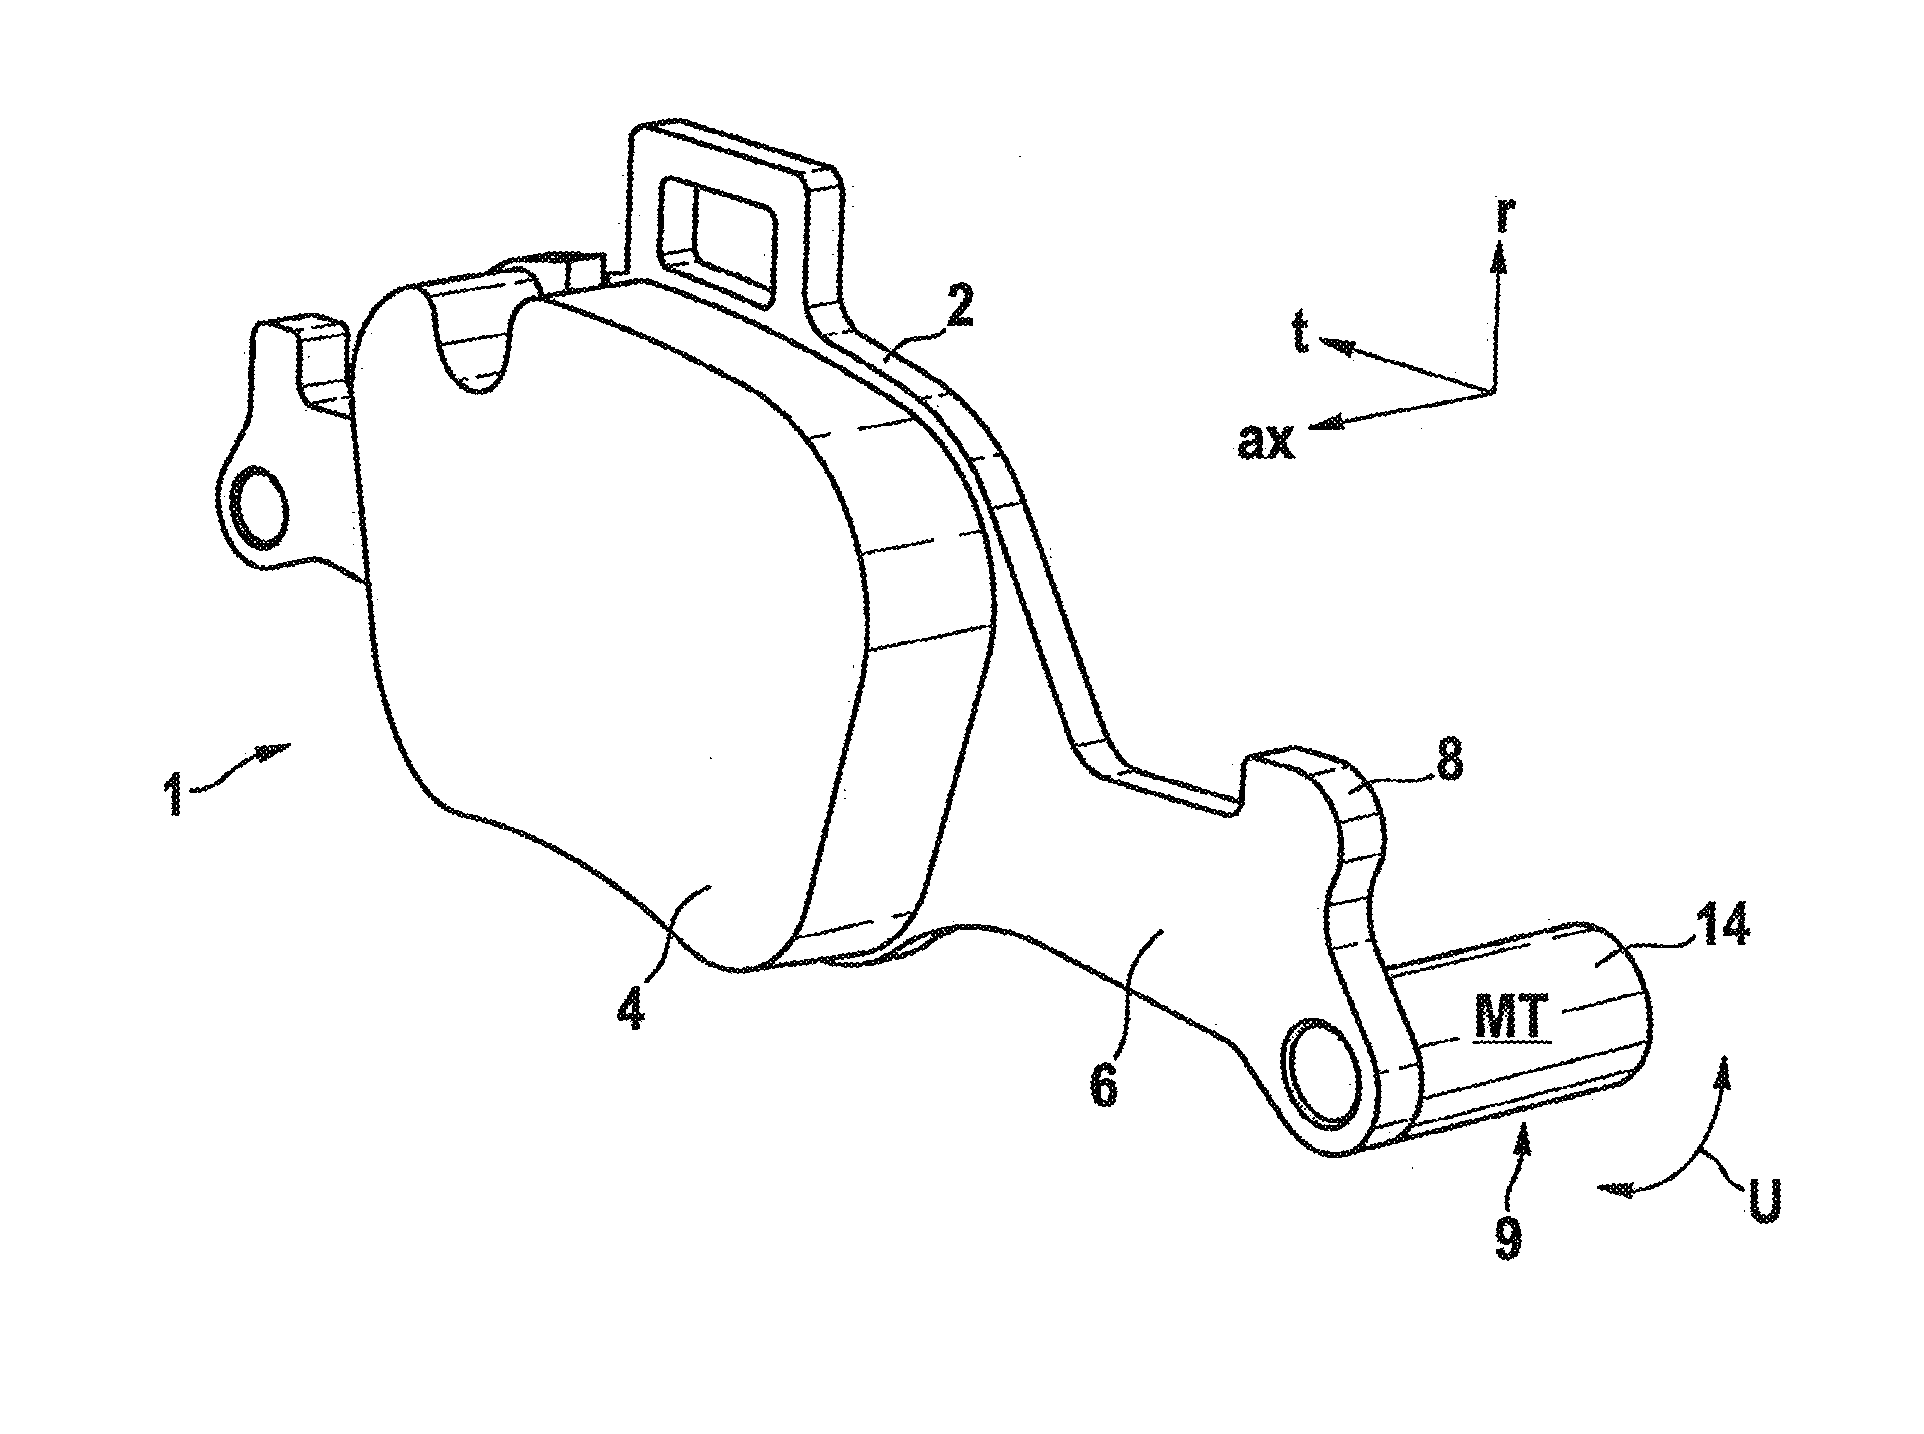 Friction lining arrangement for a disk brake